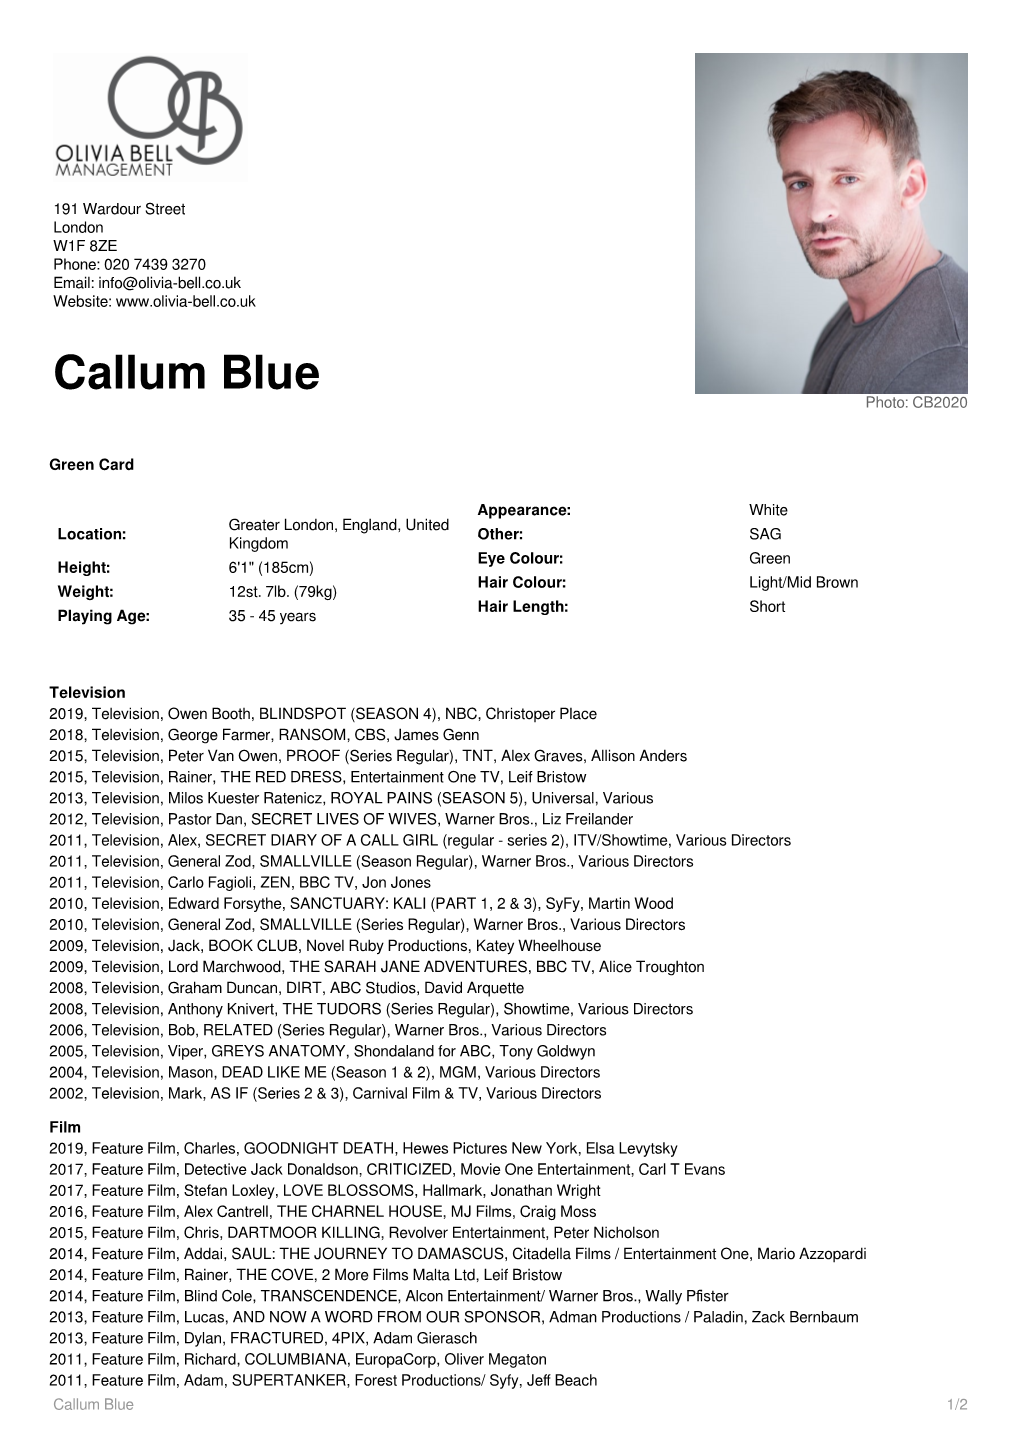 Callum Blue Photo: CB2020